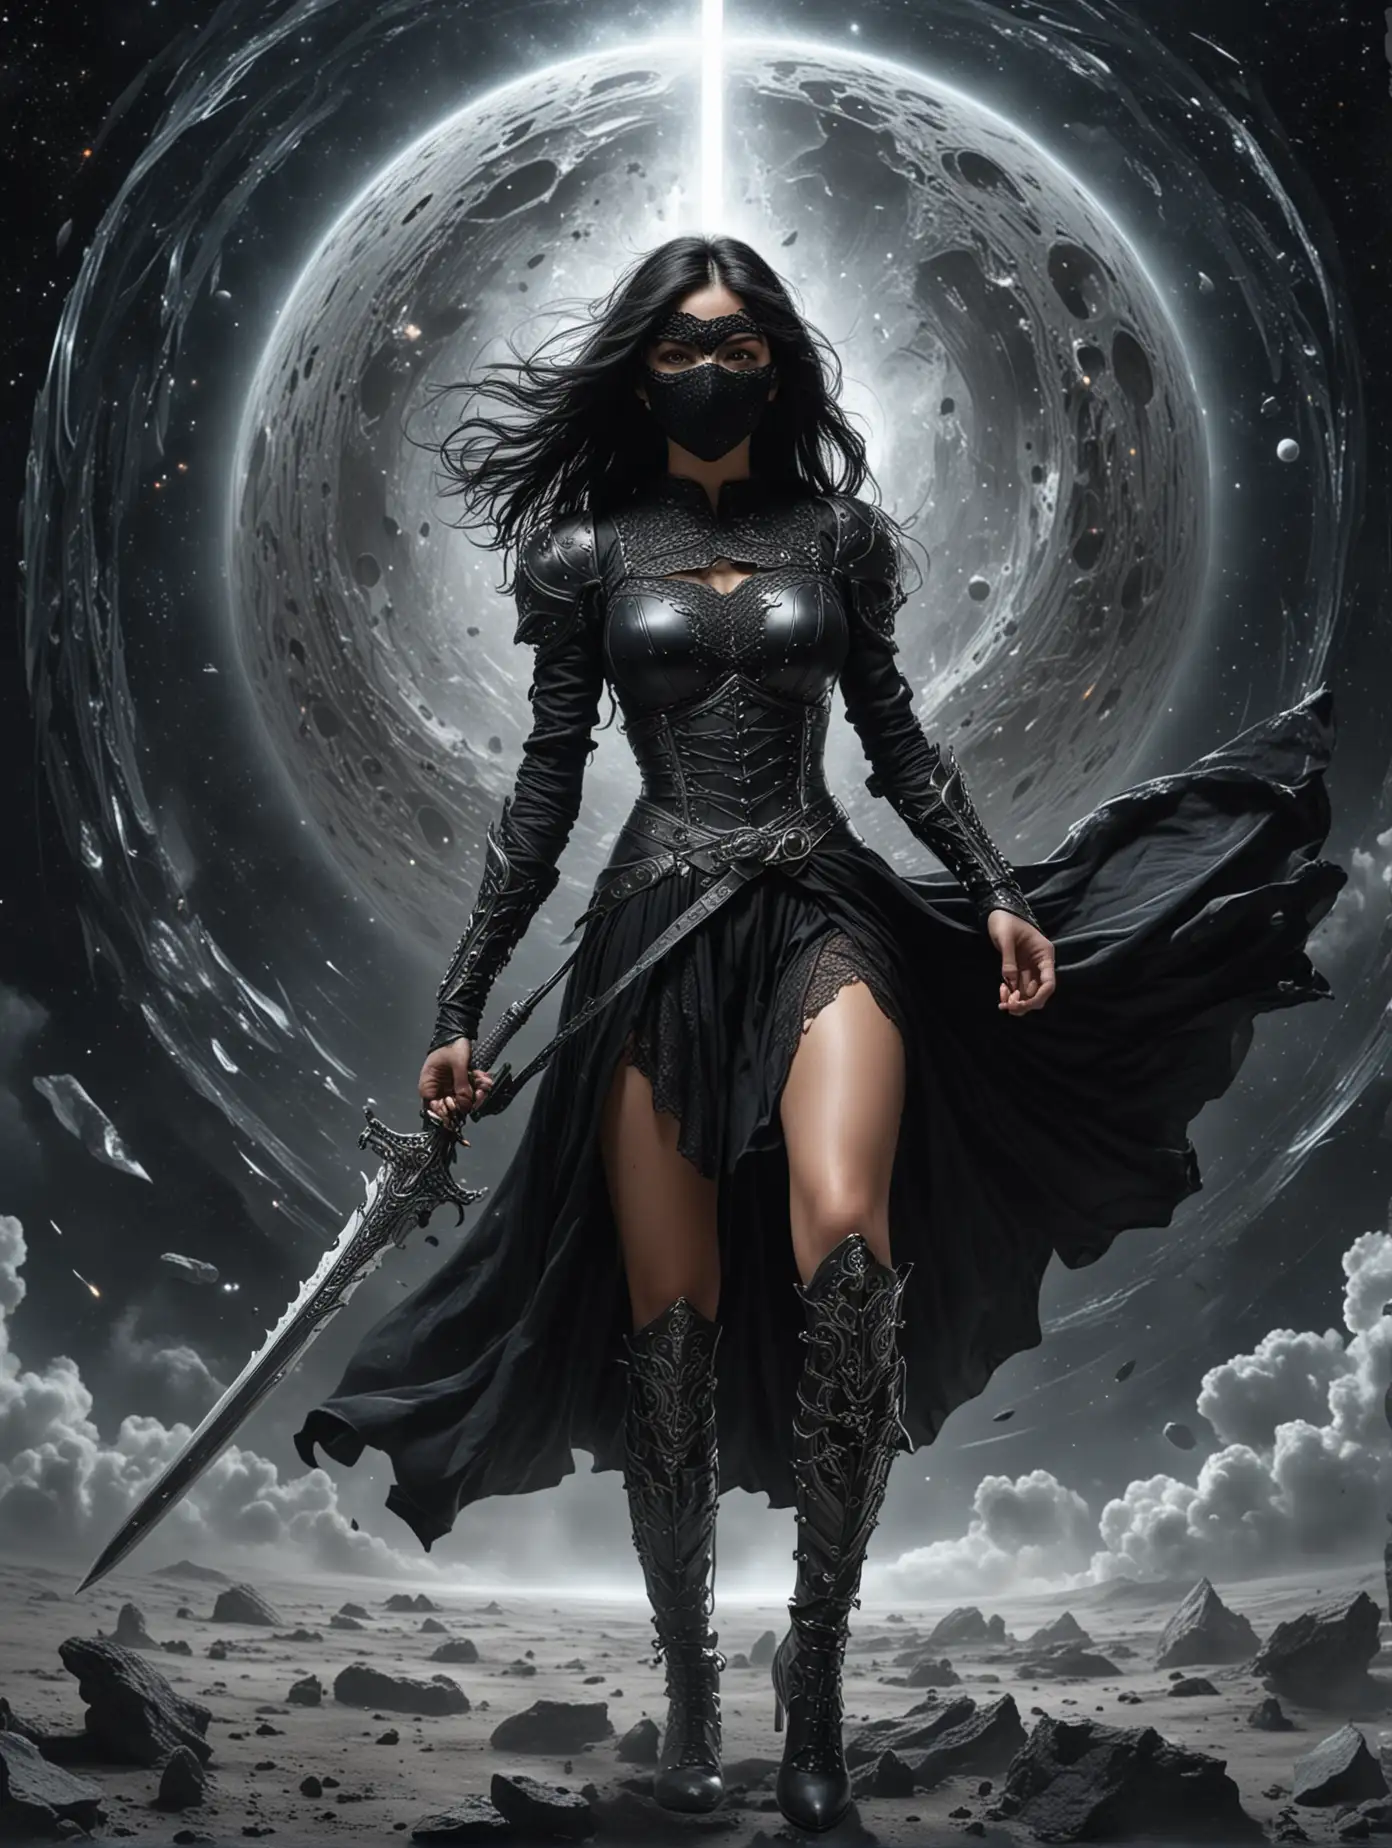 Красивая молодая женщина, черные волосы развиваются на ветру. Черное платье, серебряные доспехи, большой меч в руке. На глазах ажурная черная маска. Женщина стоит в полный рост в космосе на против черной дыры.